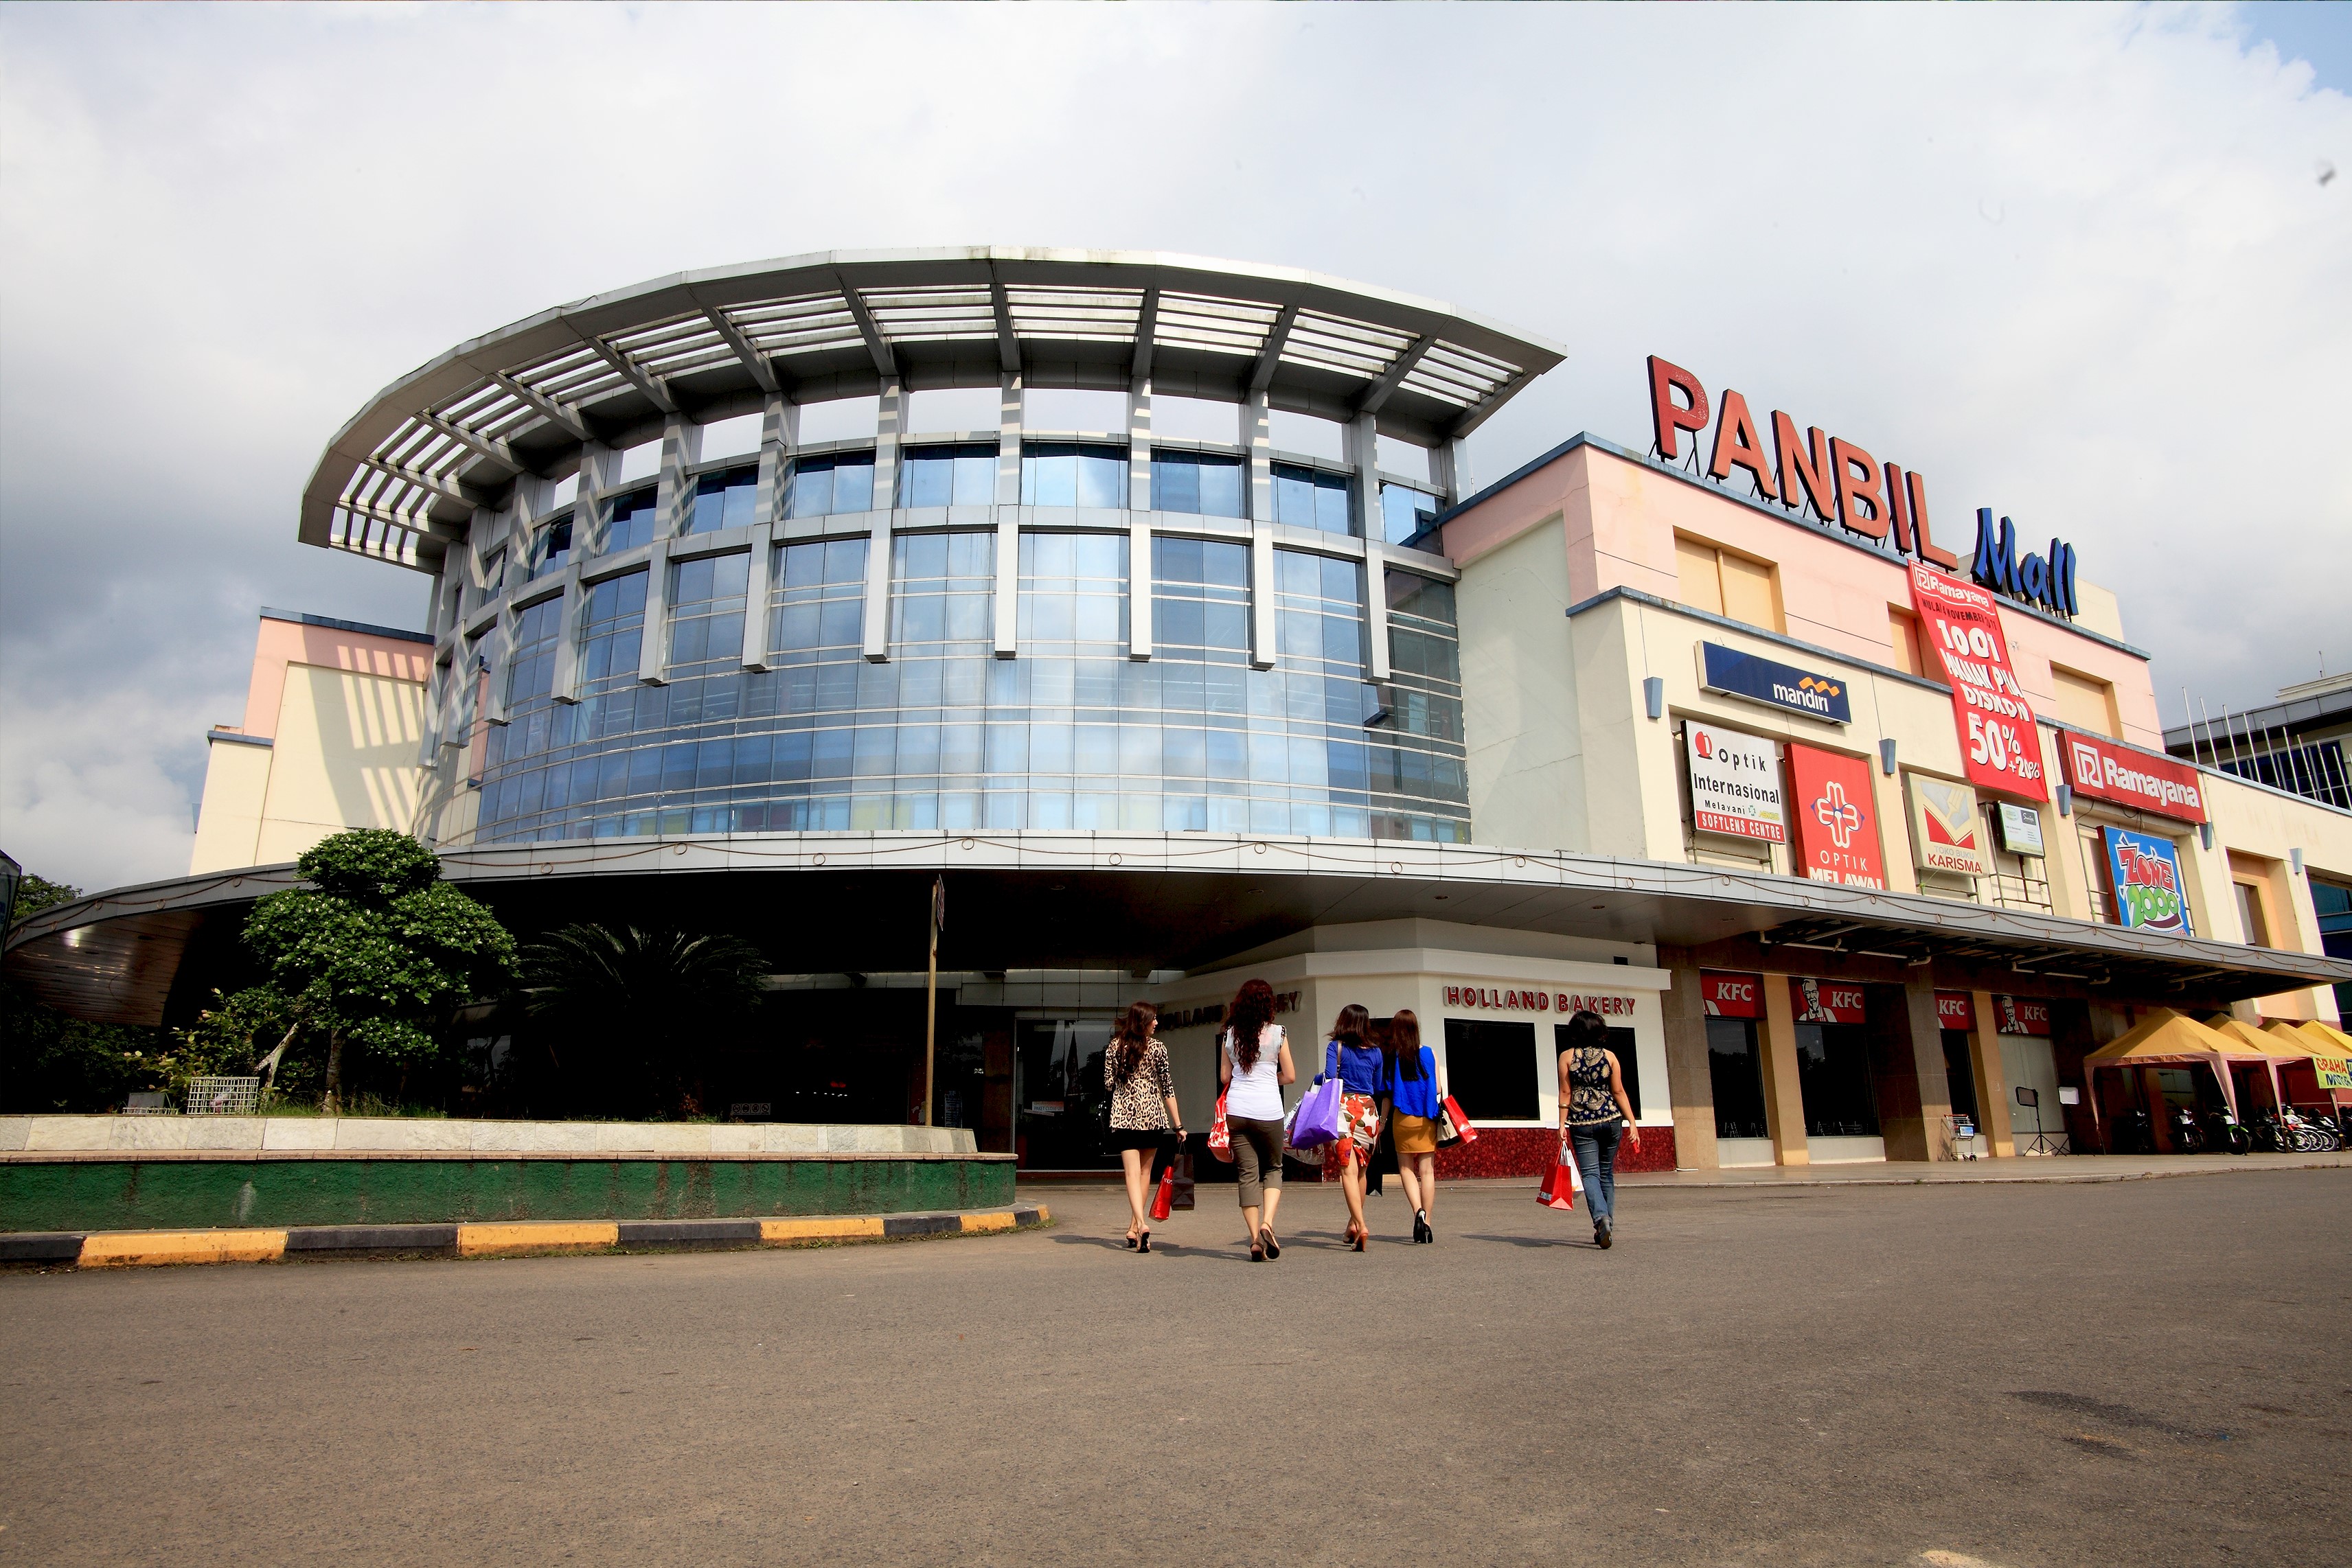 Panbil Mall